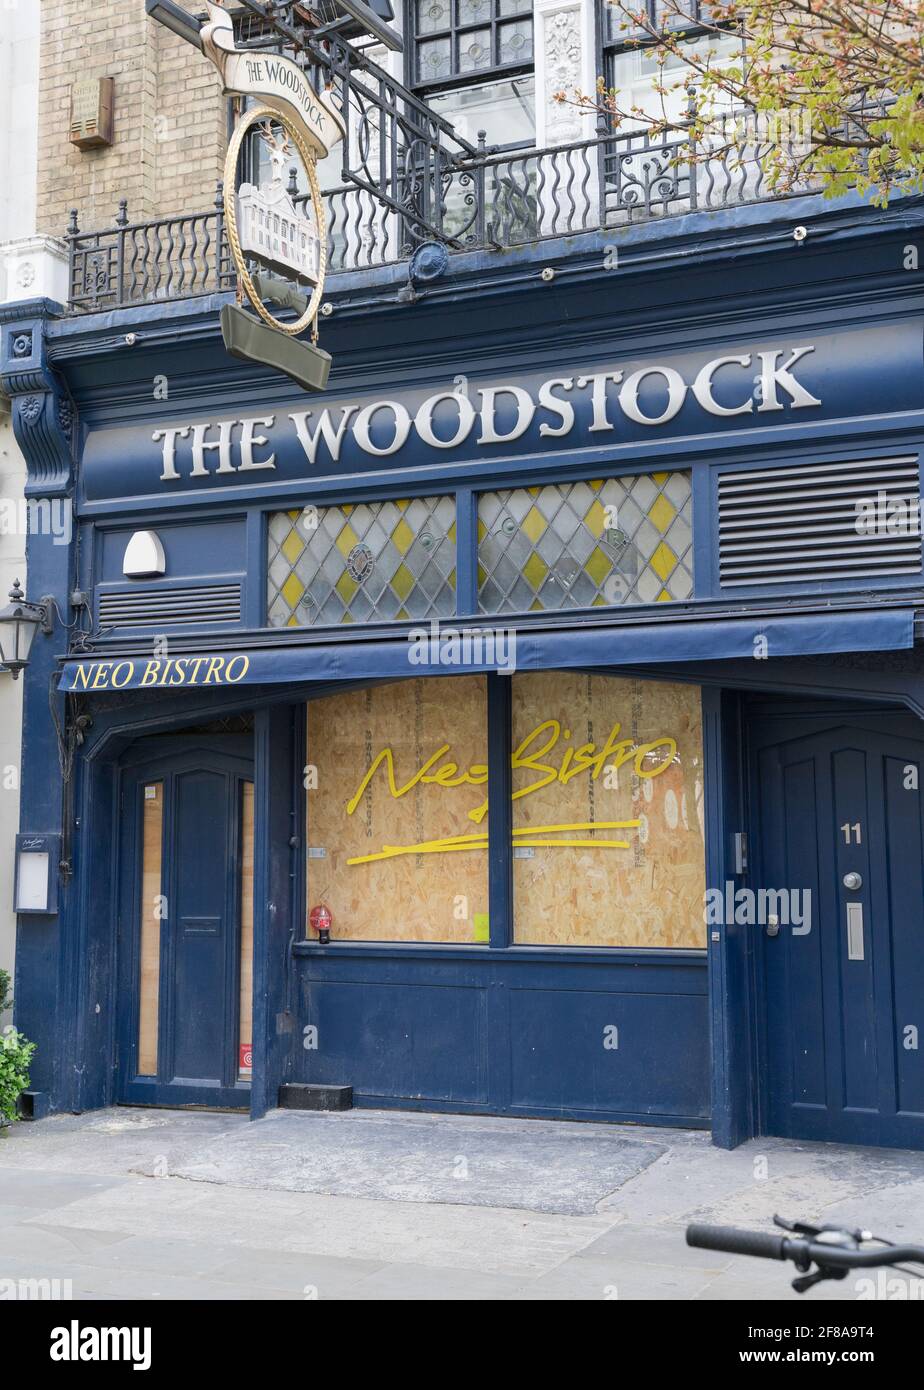 Fermeture et fermeture de woodstock, Londres Banque D'Images